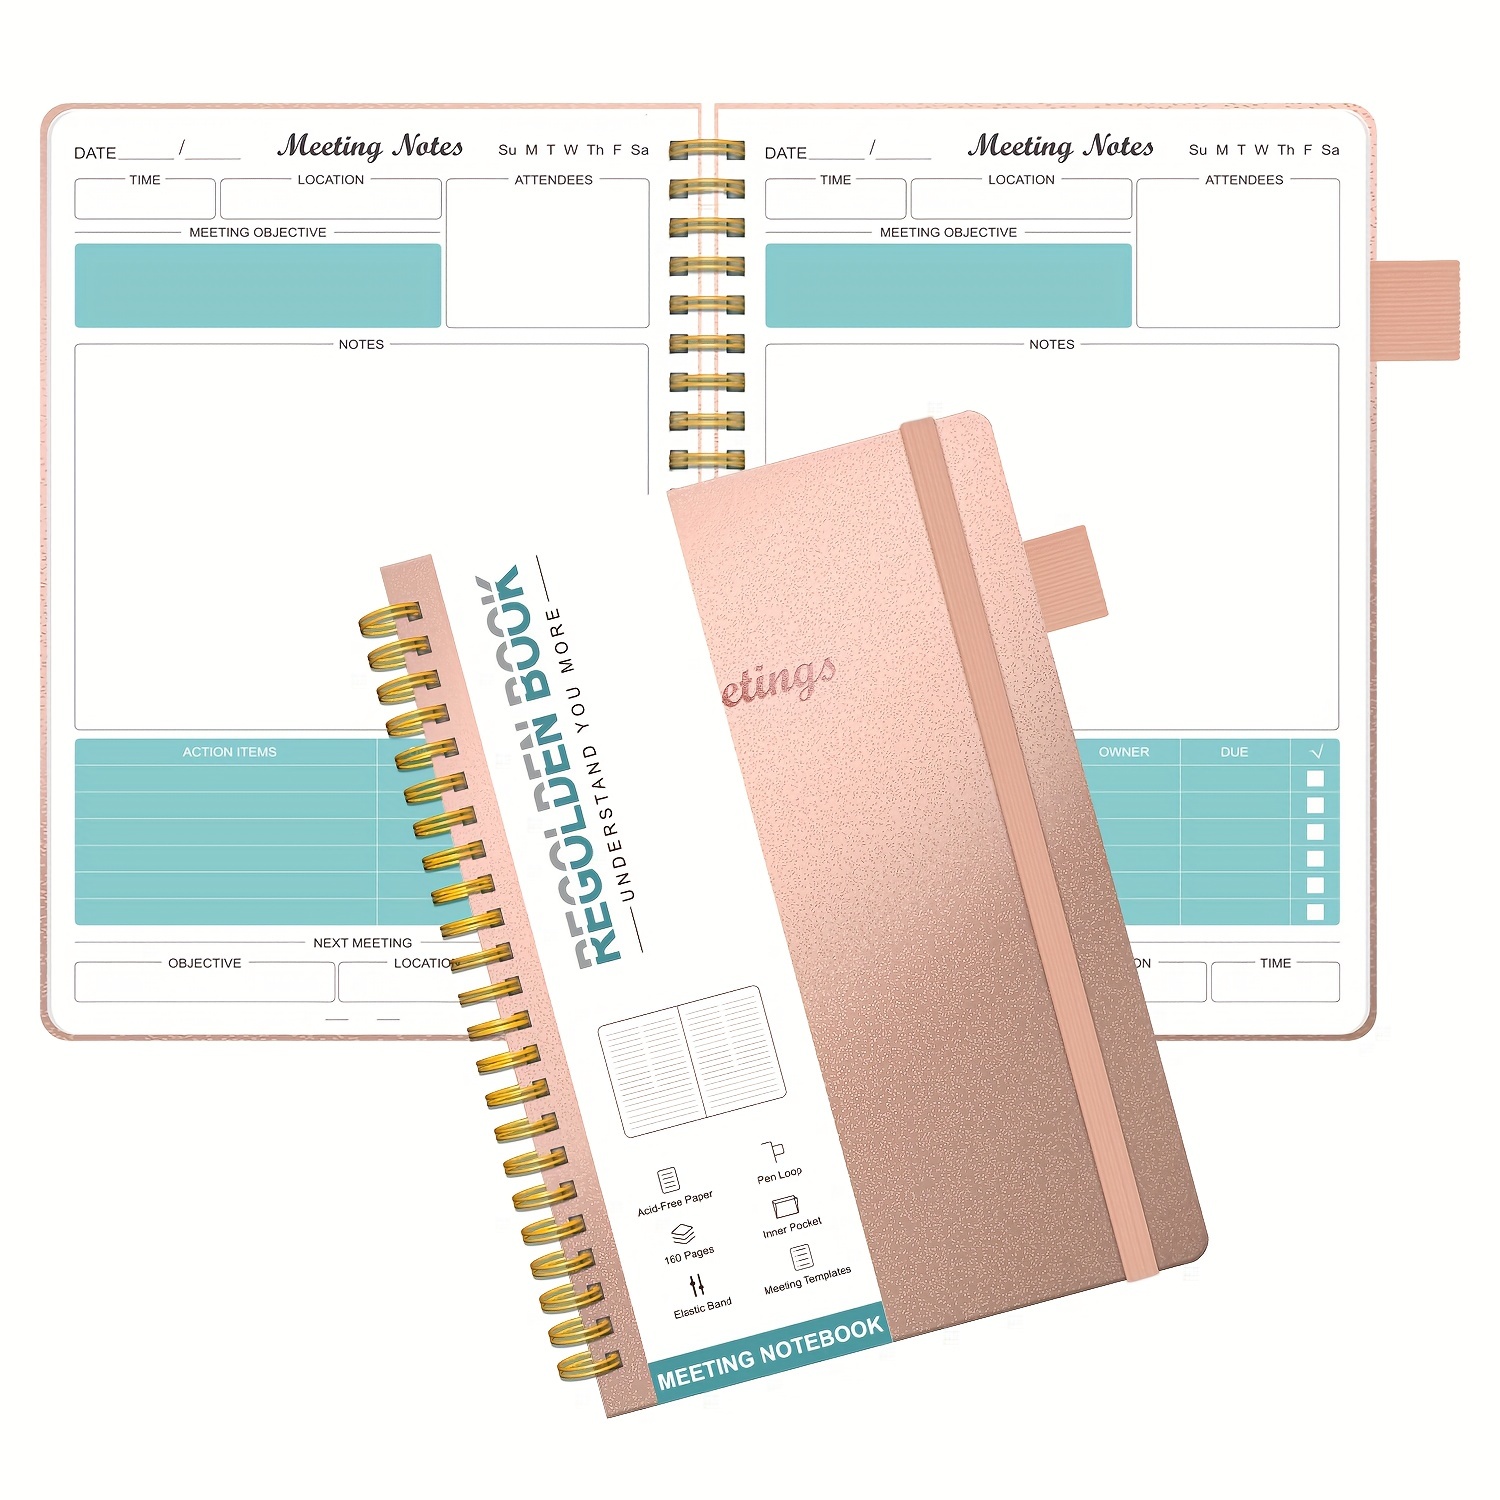 Meeting Notebook Planner